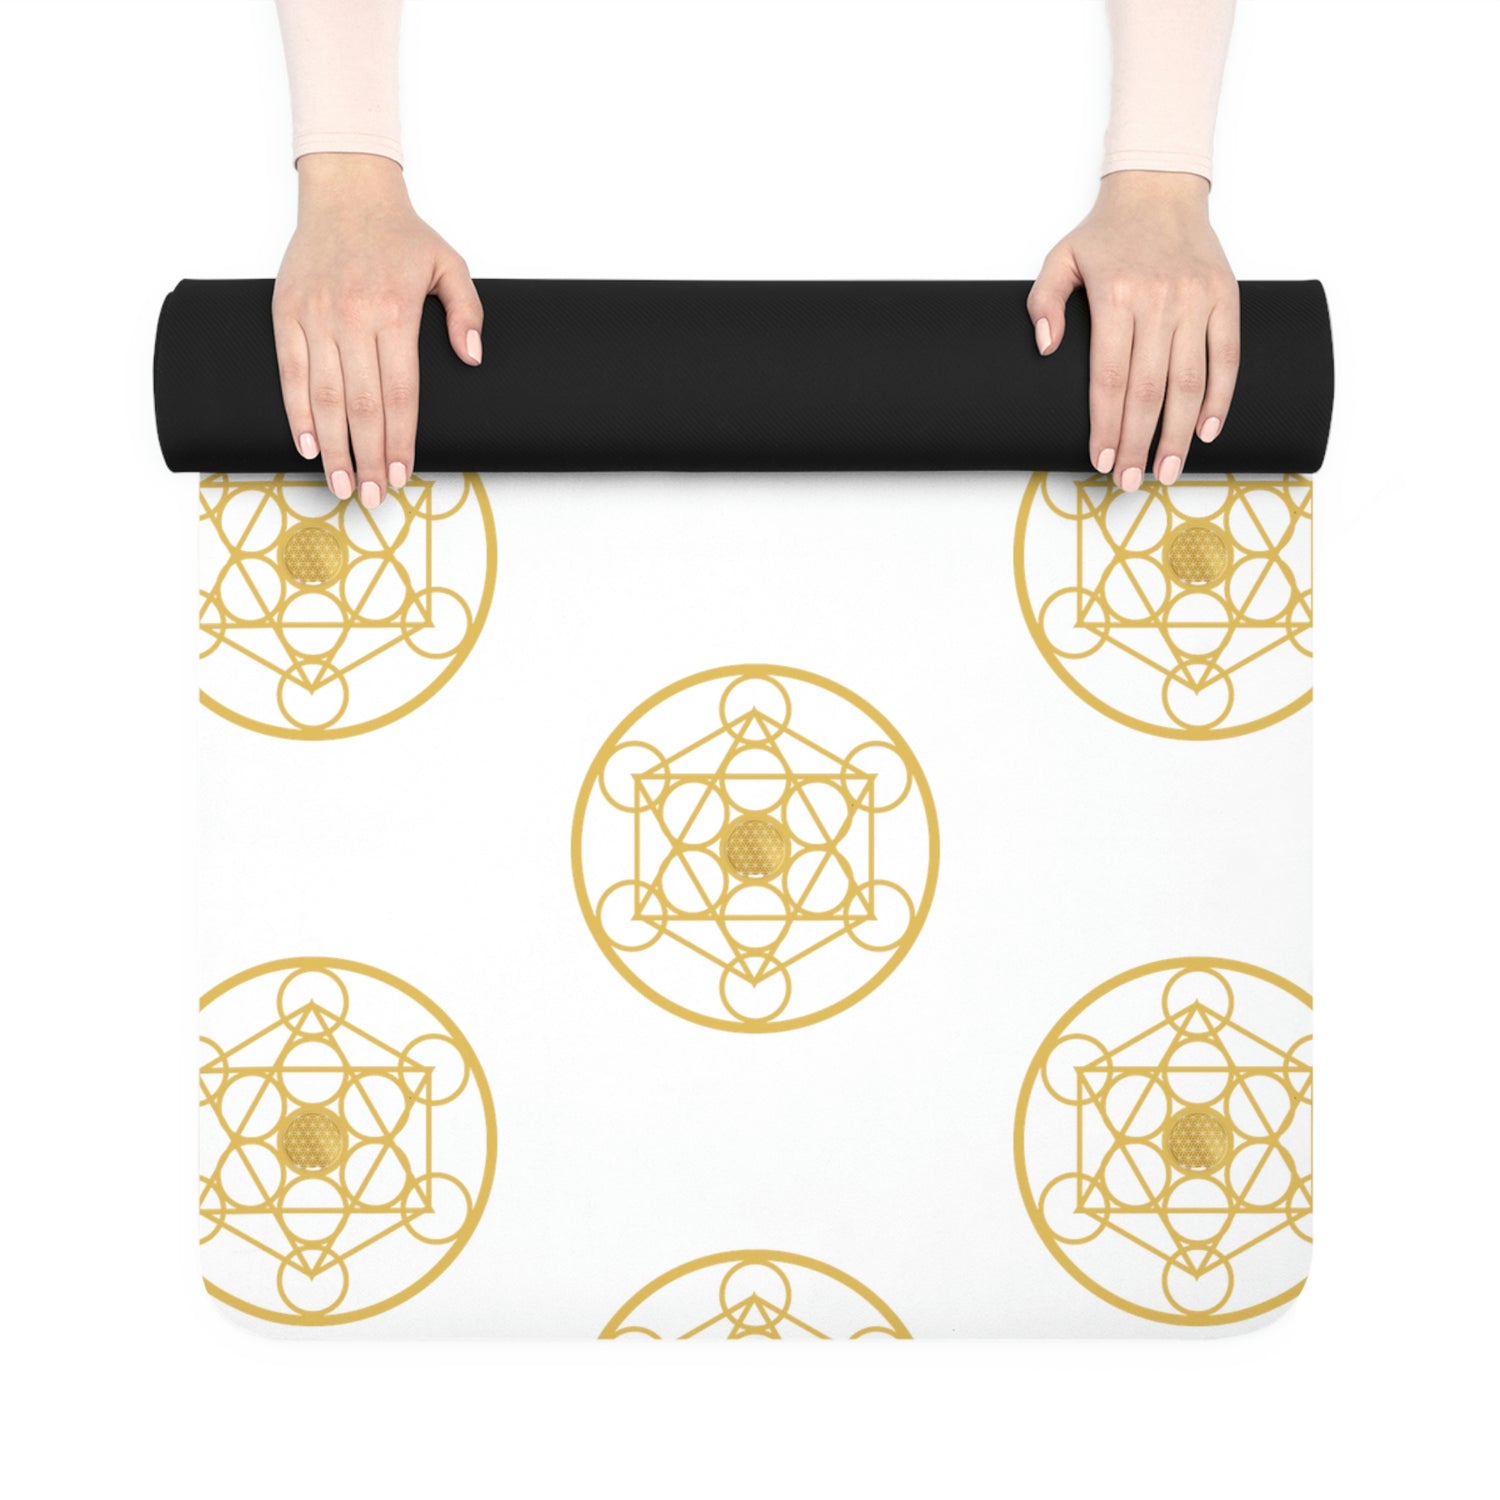 DYNYSTY - Rubber Yoga Mat